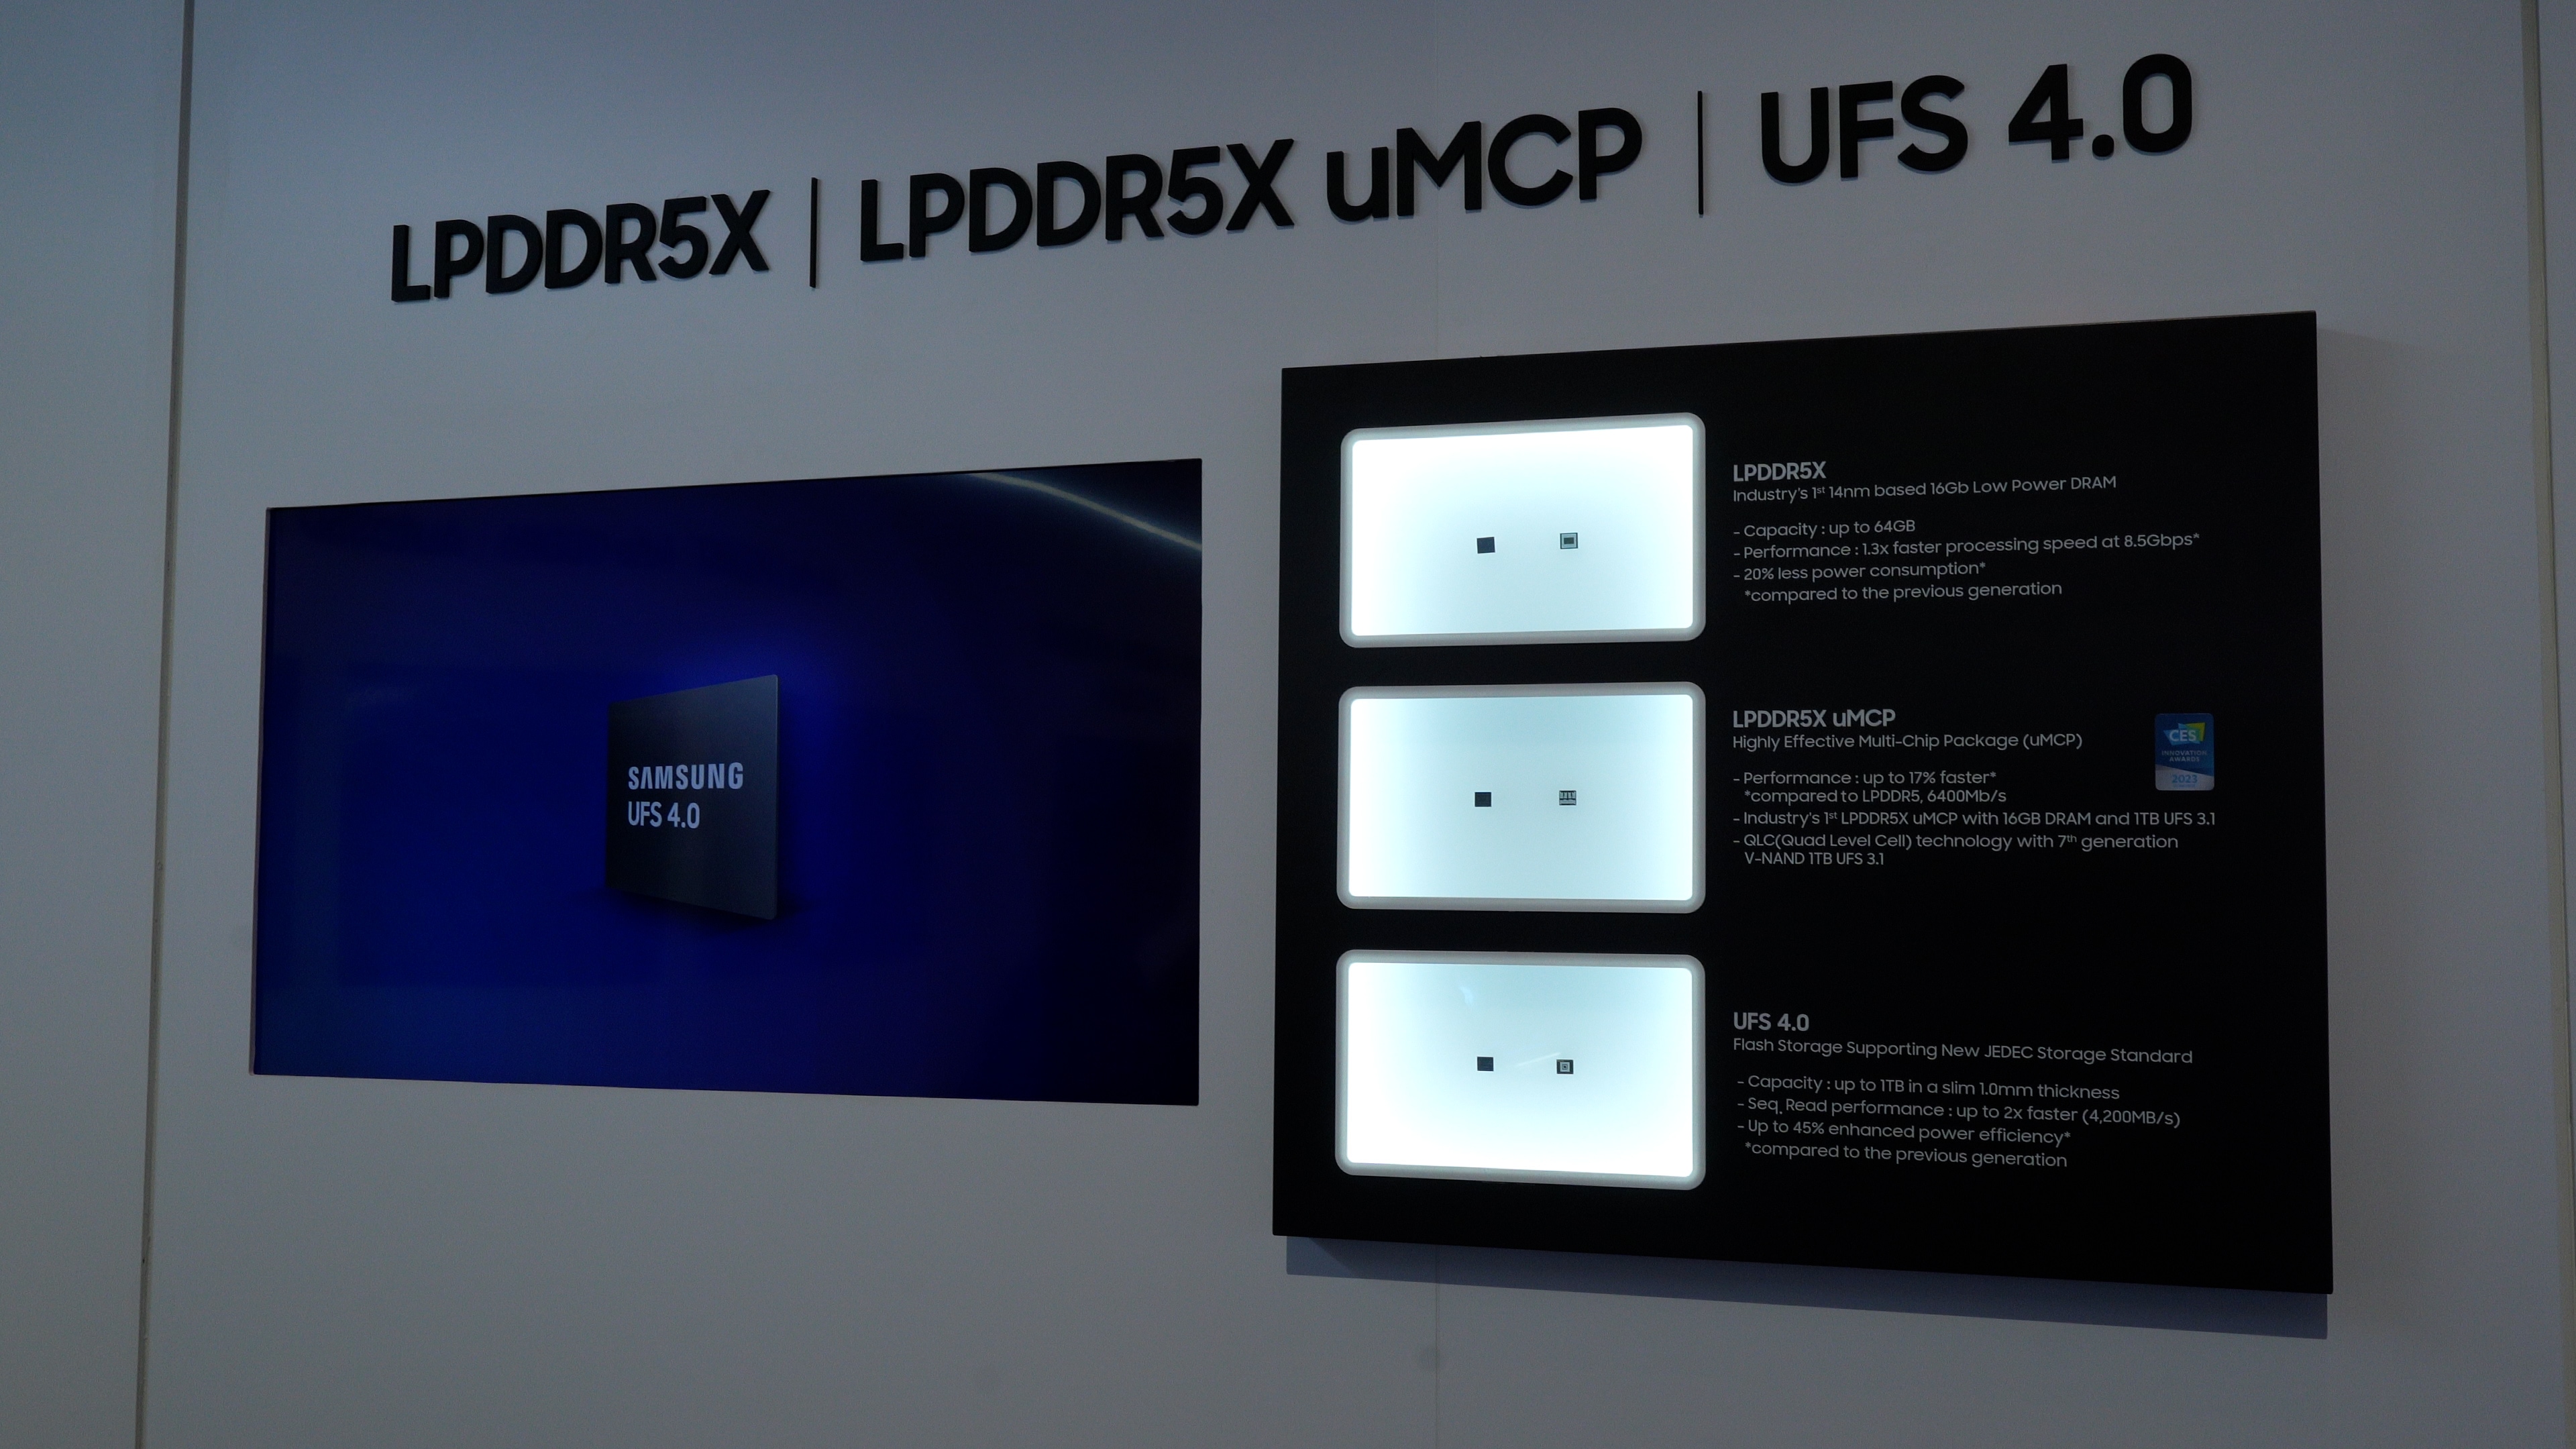 三星展示旗下 LPDDR5X、uMCP 和 UFS 4.0 技术，详细介绍了它们如何以更小尺寸实现更高性能。